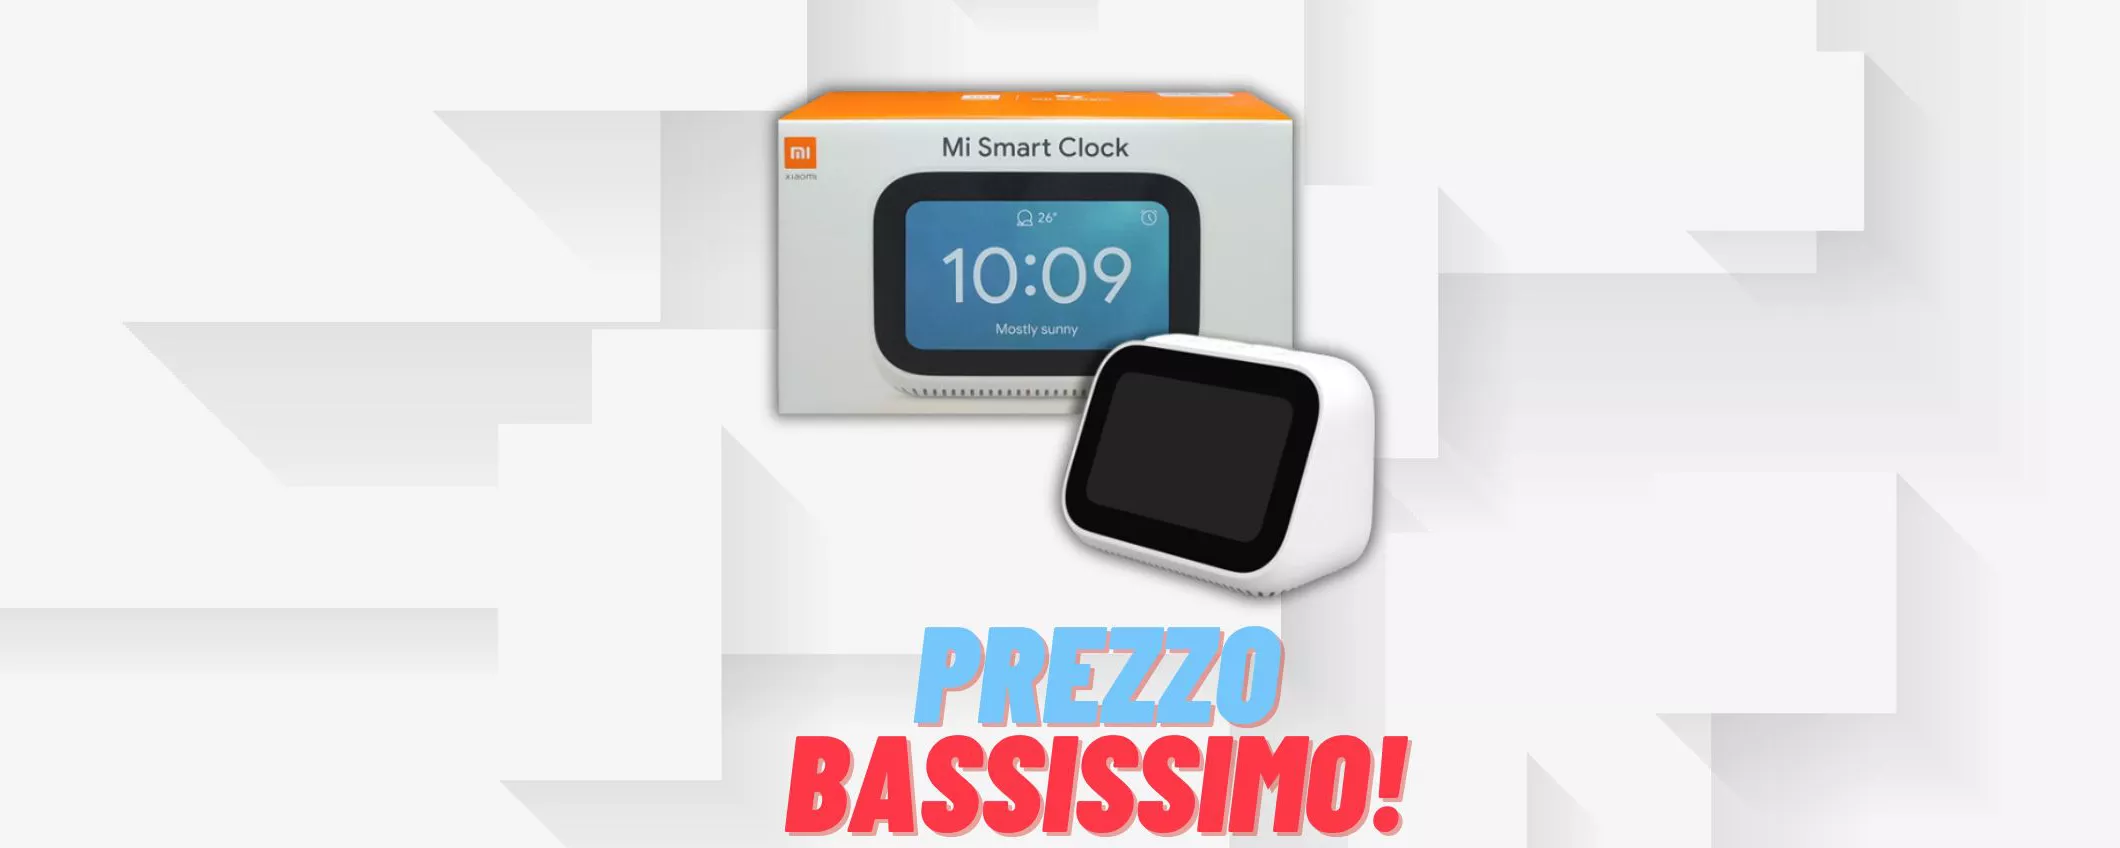 Xiaomi Mi Smart Clock assistente vocale VA A RUBA: costa solo 33,29€